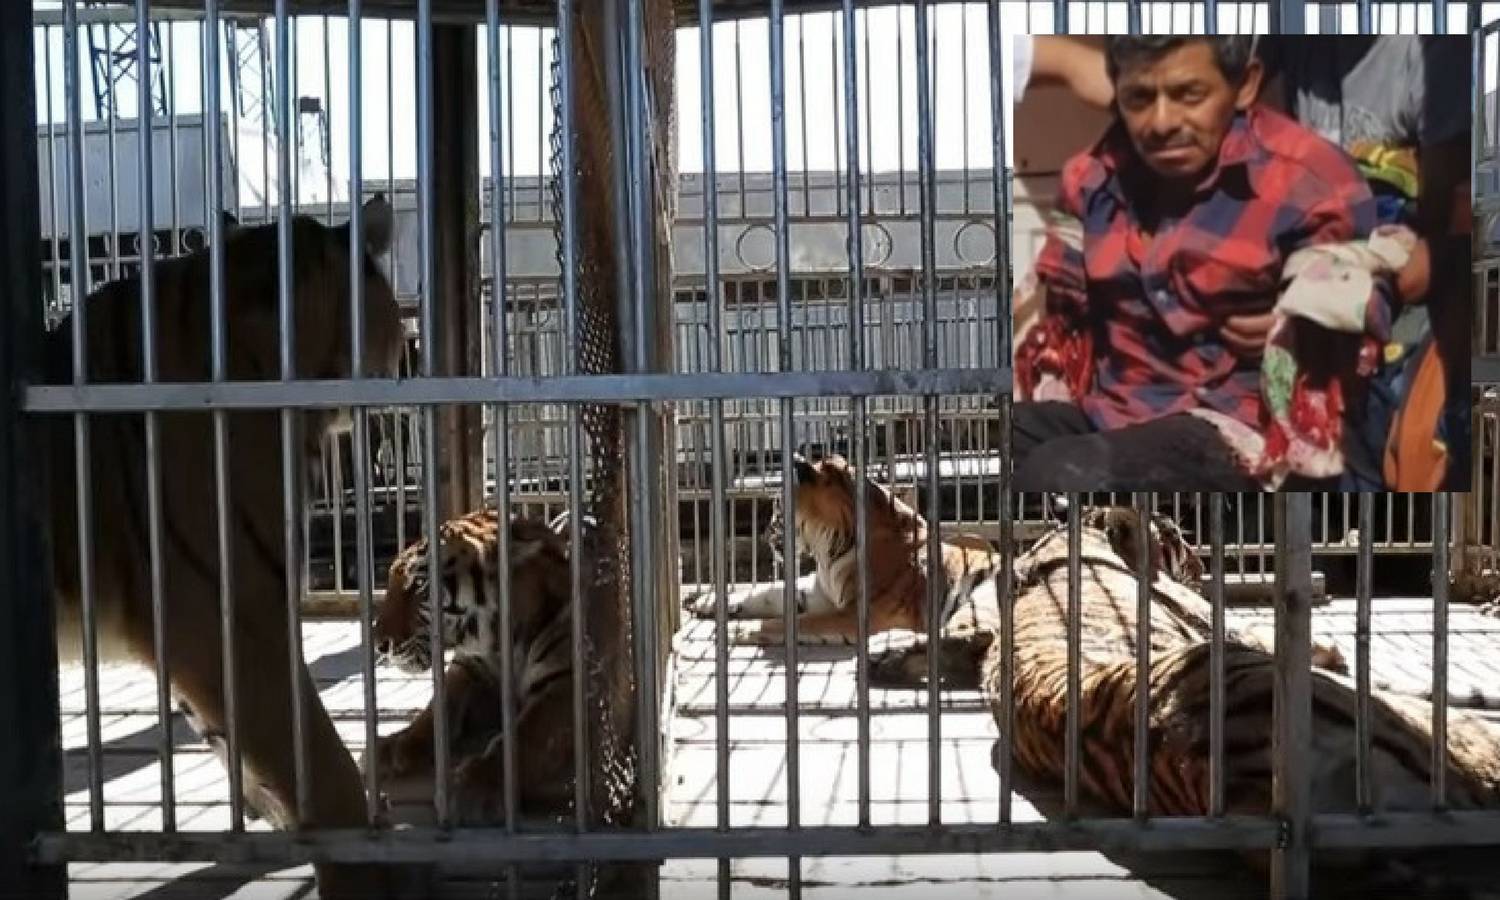 Užas u cirkusu: Tigrovi iščupali ruke muškarcu koji ih je hranio